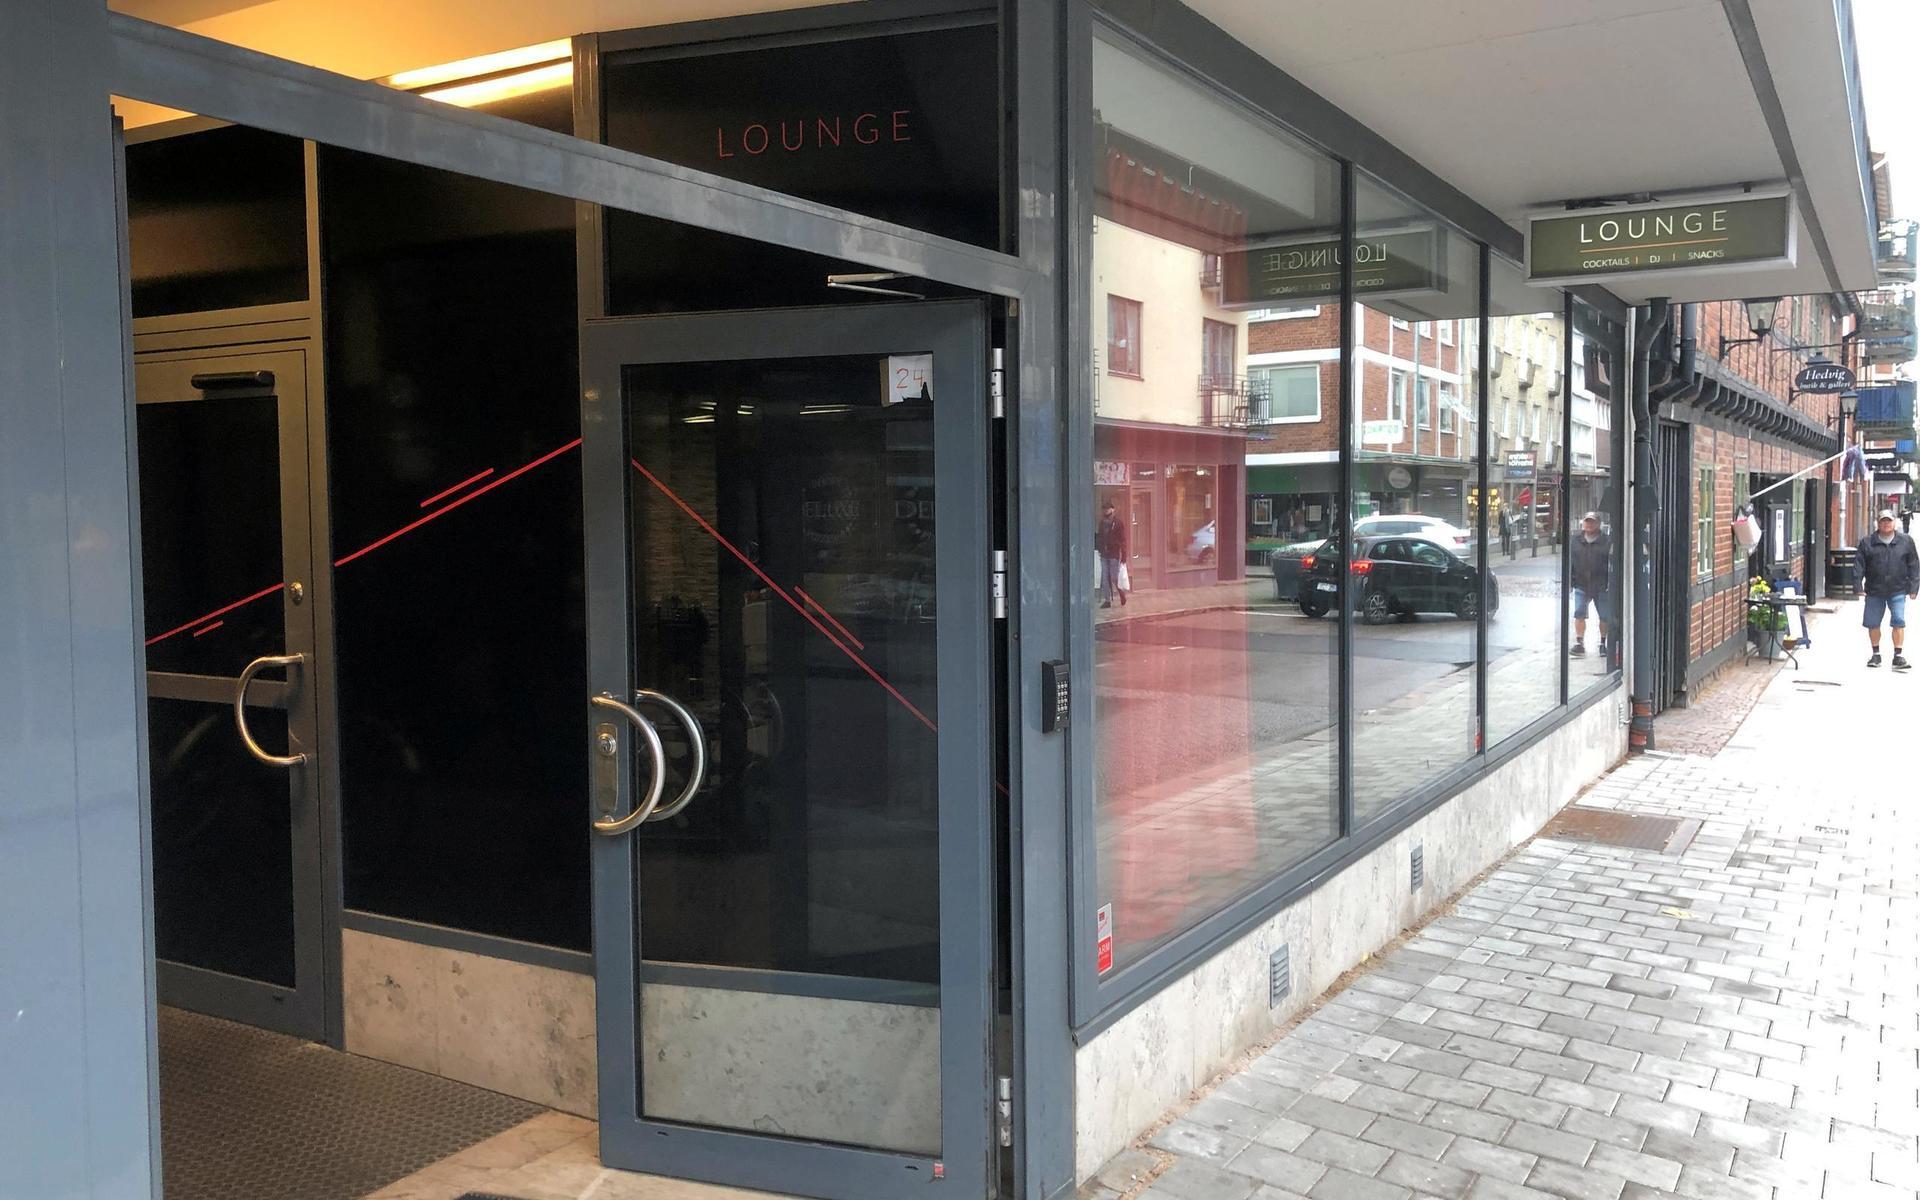 Även cocktailbaren Lounge, som öppnade i år hos Mr Vinc’ks tidigare lokaler på Klammerdammsgatan, hotas av samma konkursansökan.